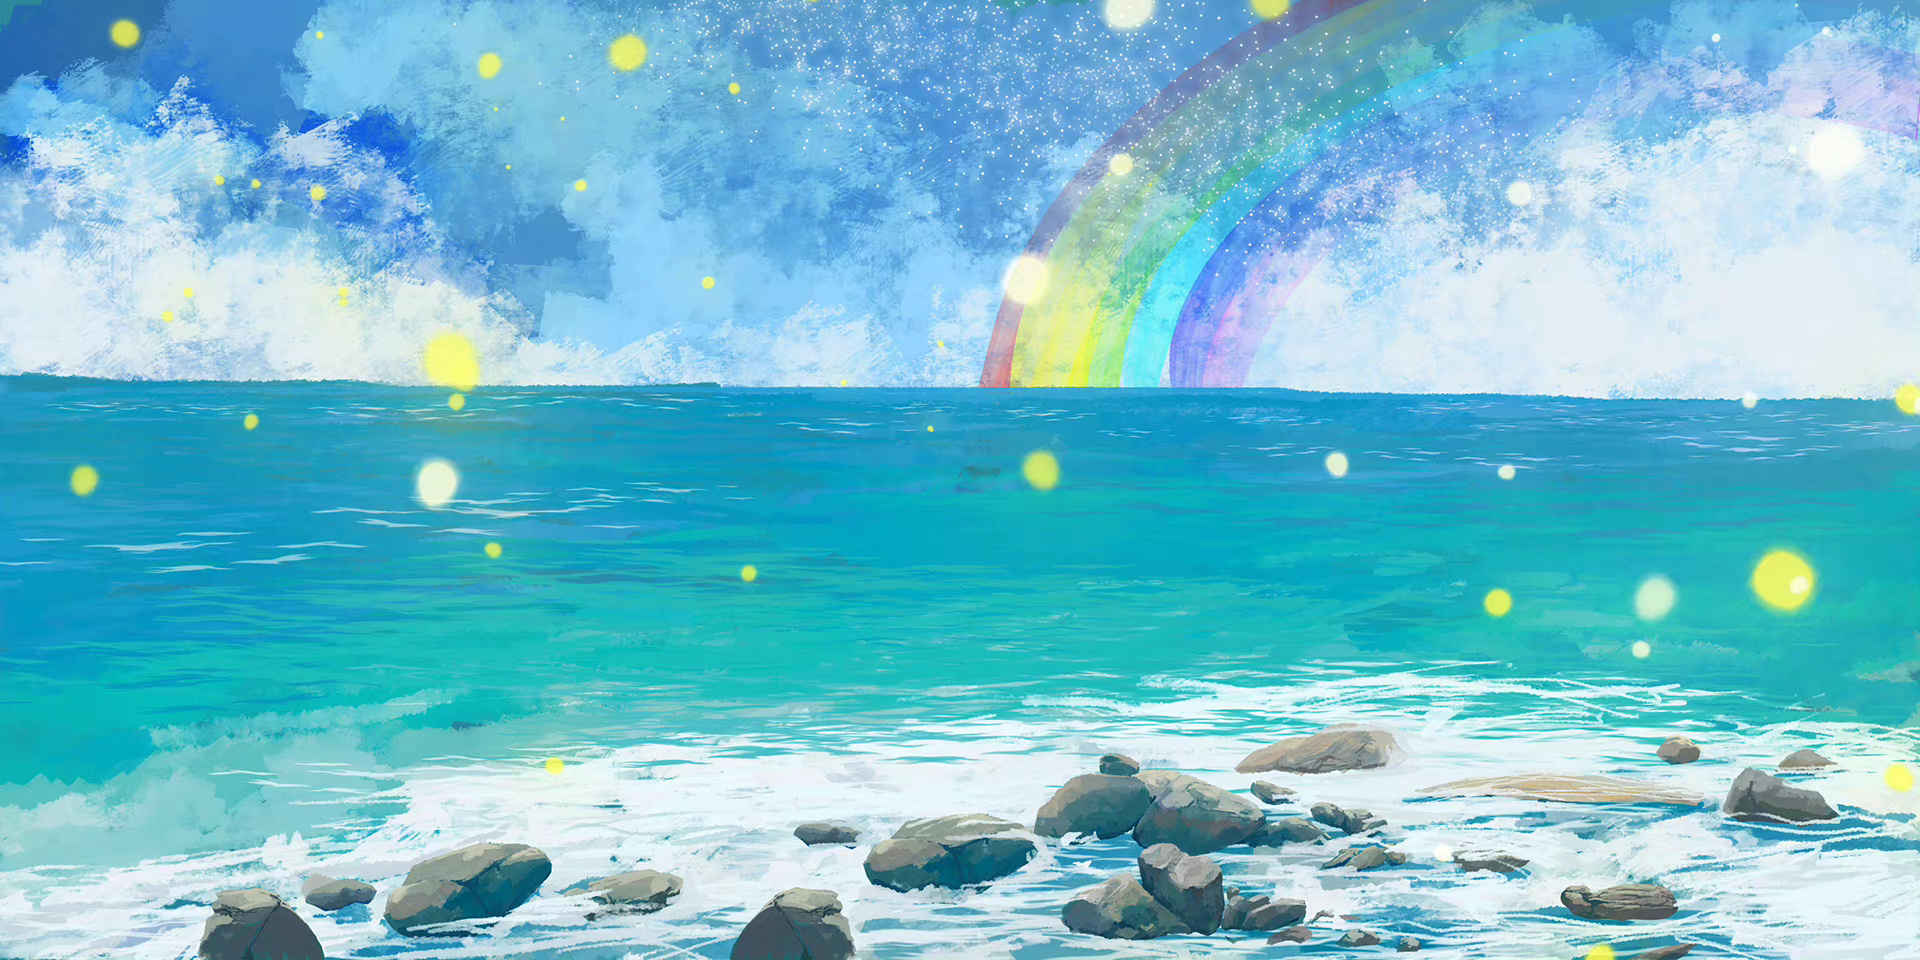 唯美梦幻手绘海洋彩虹清新风景插画素材-